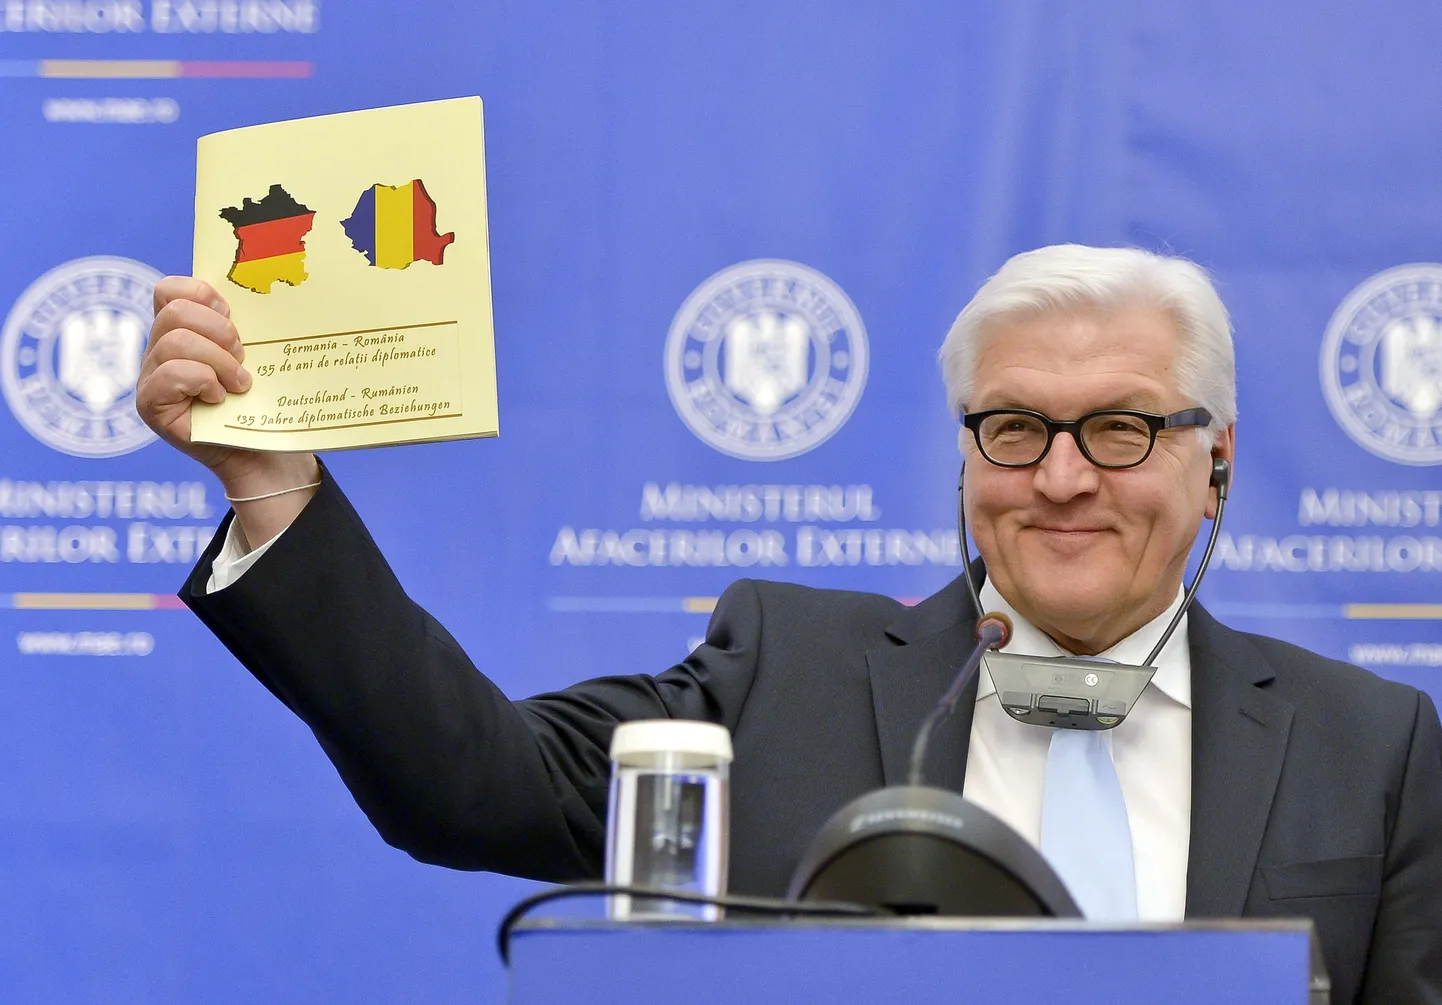 Saksa välisminister Frank-Walter Steinmeier näitab dokumenti, millega tähistati 135 aasta möödumist Saksa-Rumeenia diplomaatiliste suhete sisseviimist.